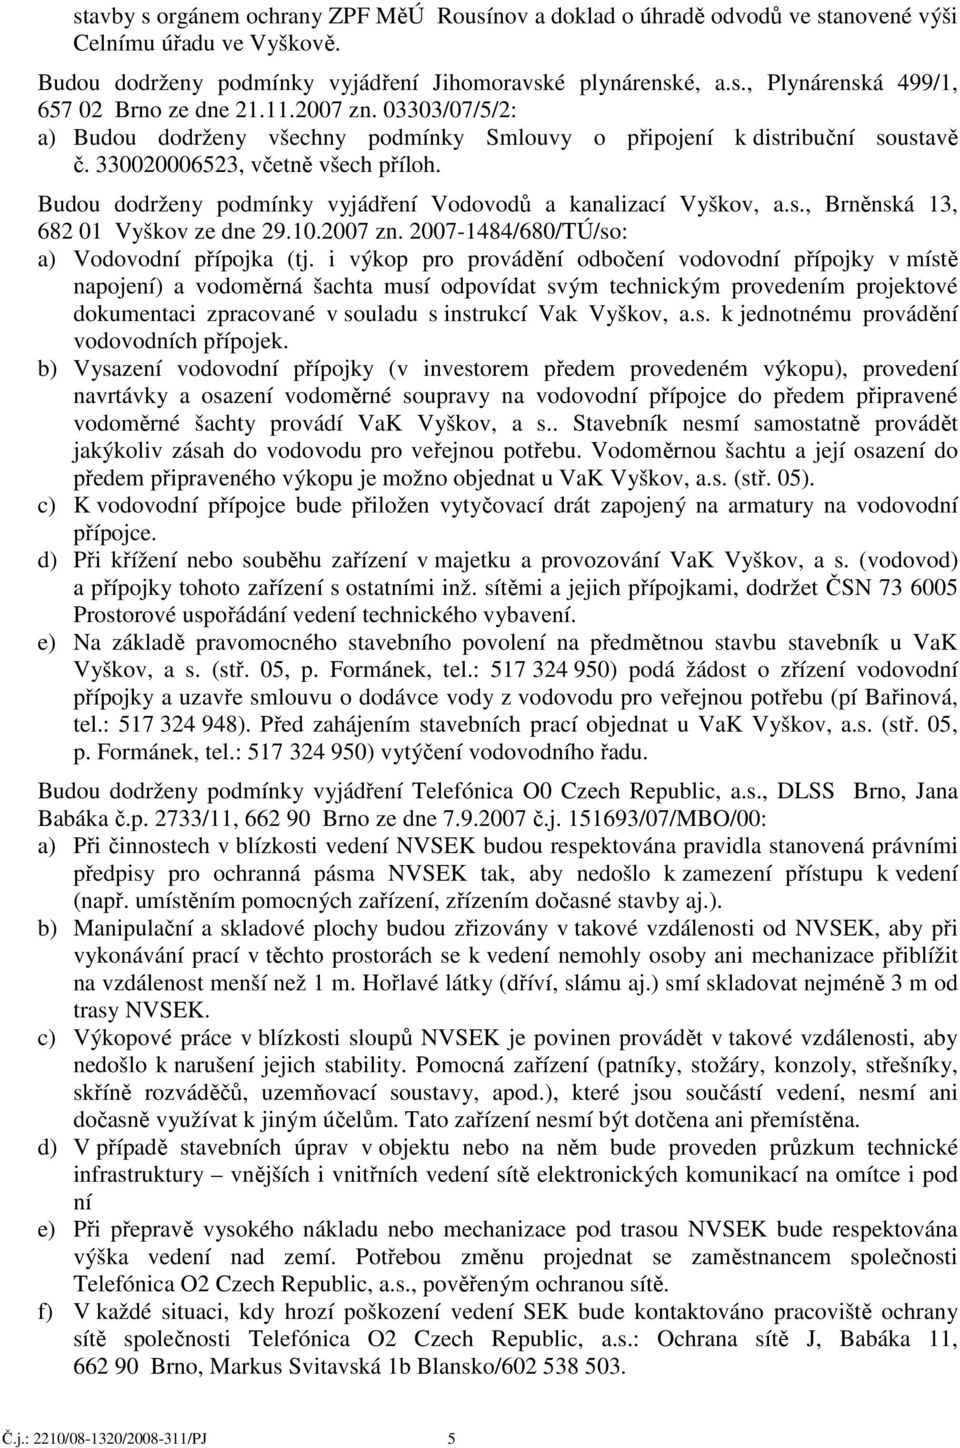 Budou dodrženy podmínky vyjádření Vodovodů a kanalizací Vyškov, a.s., Brněnská 13, 682 01 Vyškov ze dne 29.10.2007 zn. 2007-1484/680/TÚ/so: a) Vodovodní přípojka (tj.